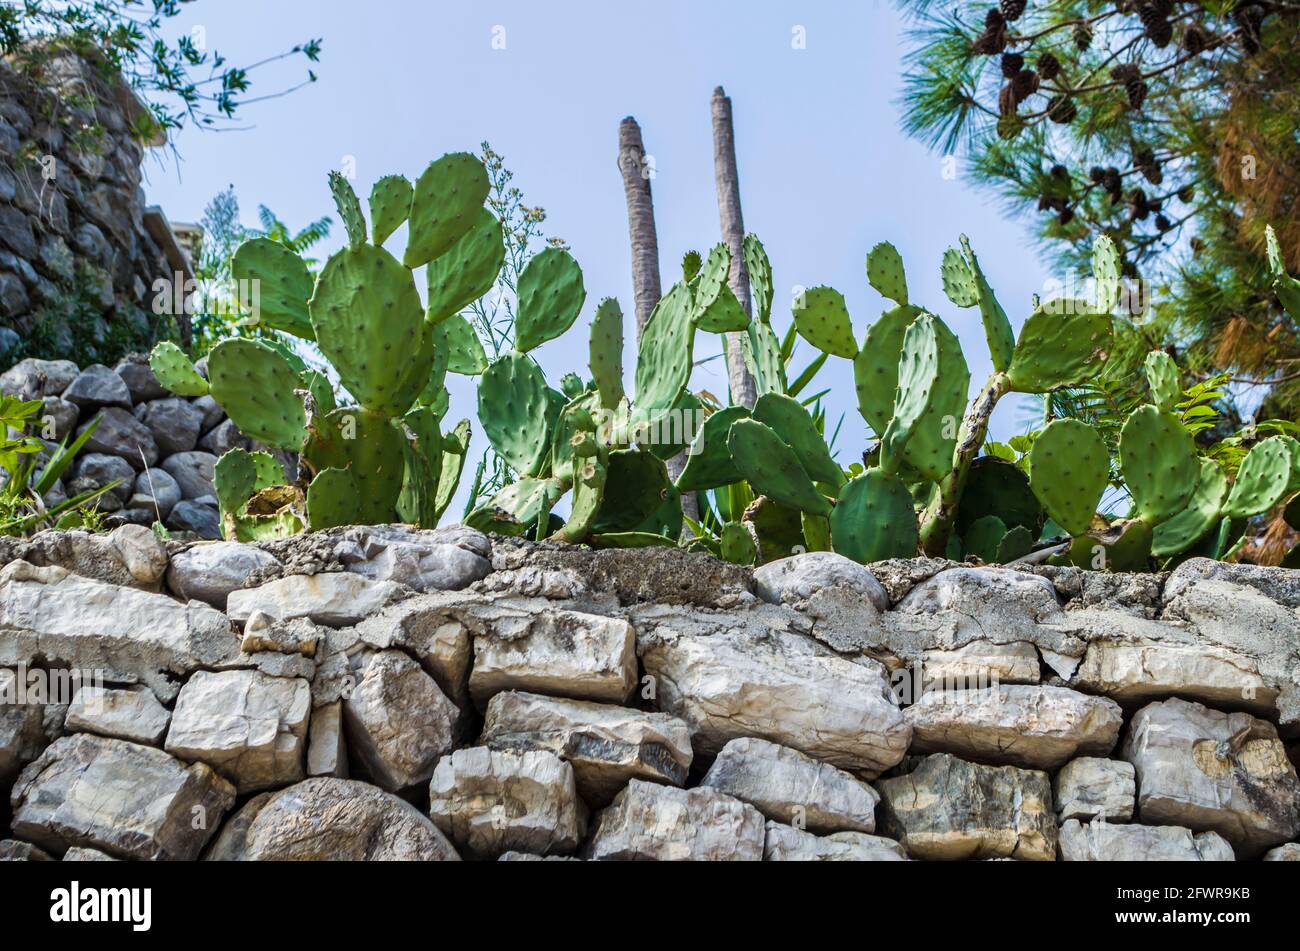 Kaktus aus Kaktus mit Kaktus aus Kaktus an den Hängen Montenegros. Natürliche Landschaft Blumenfoto. Stockfoto